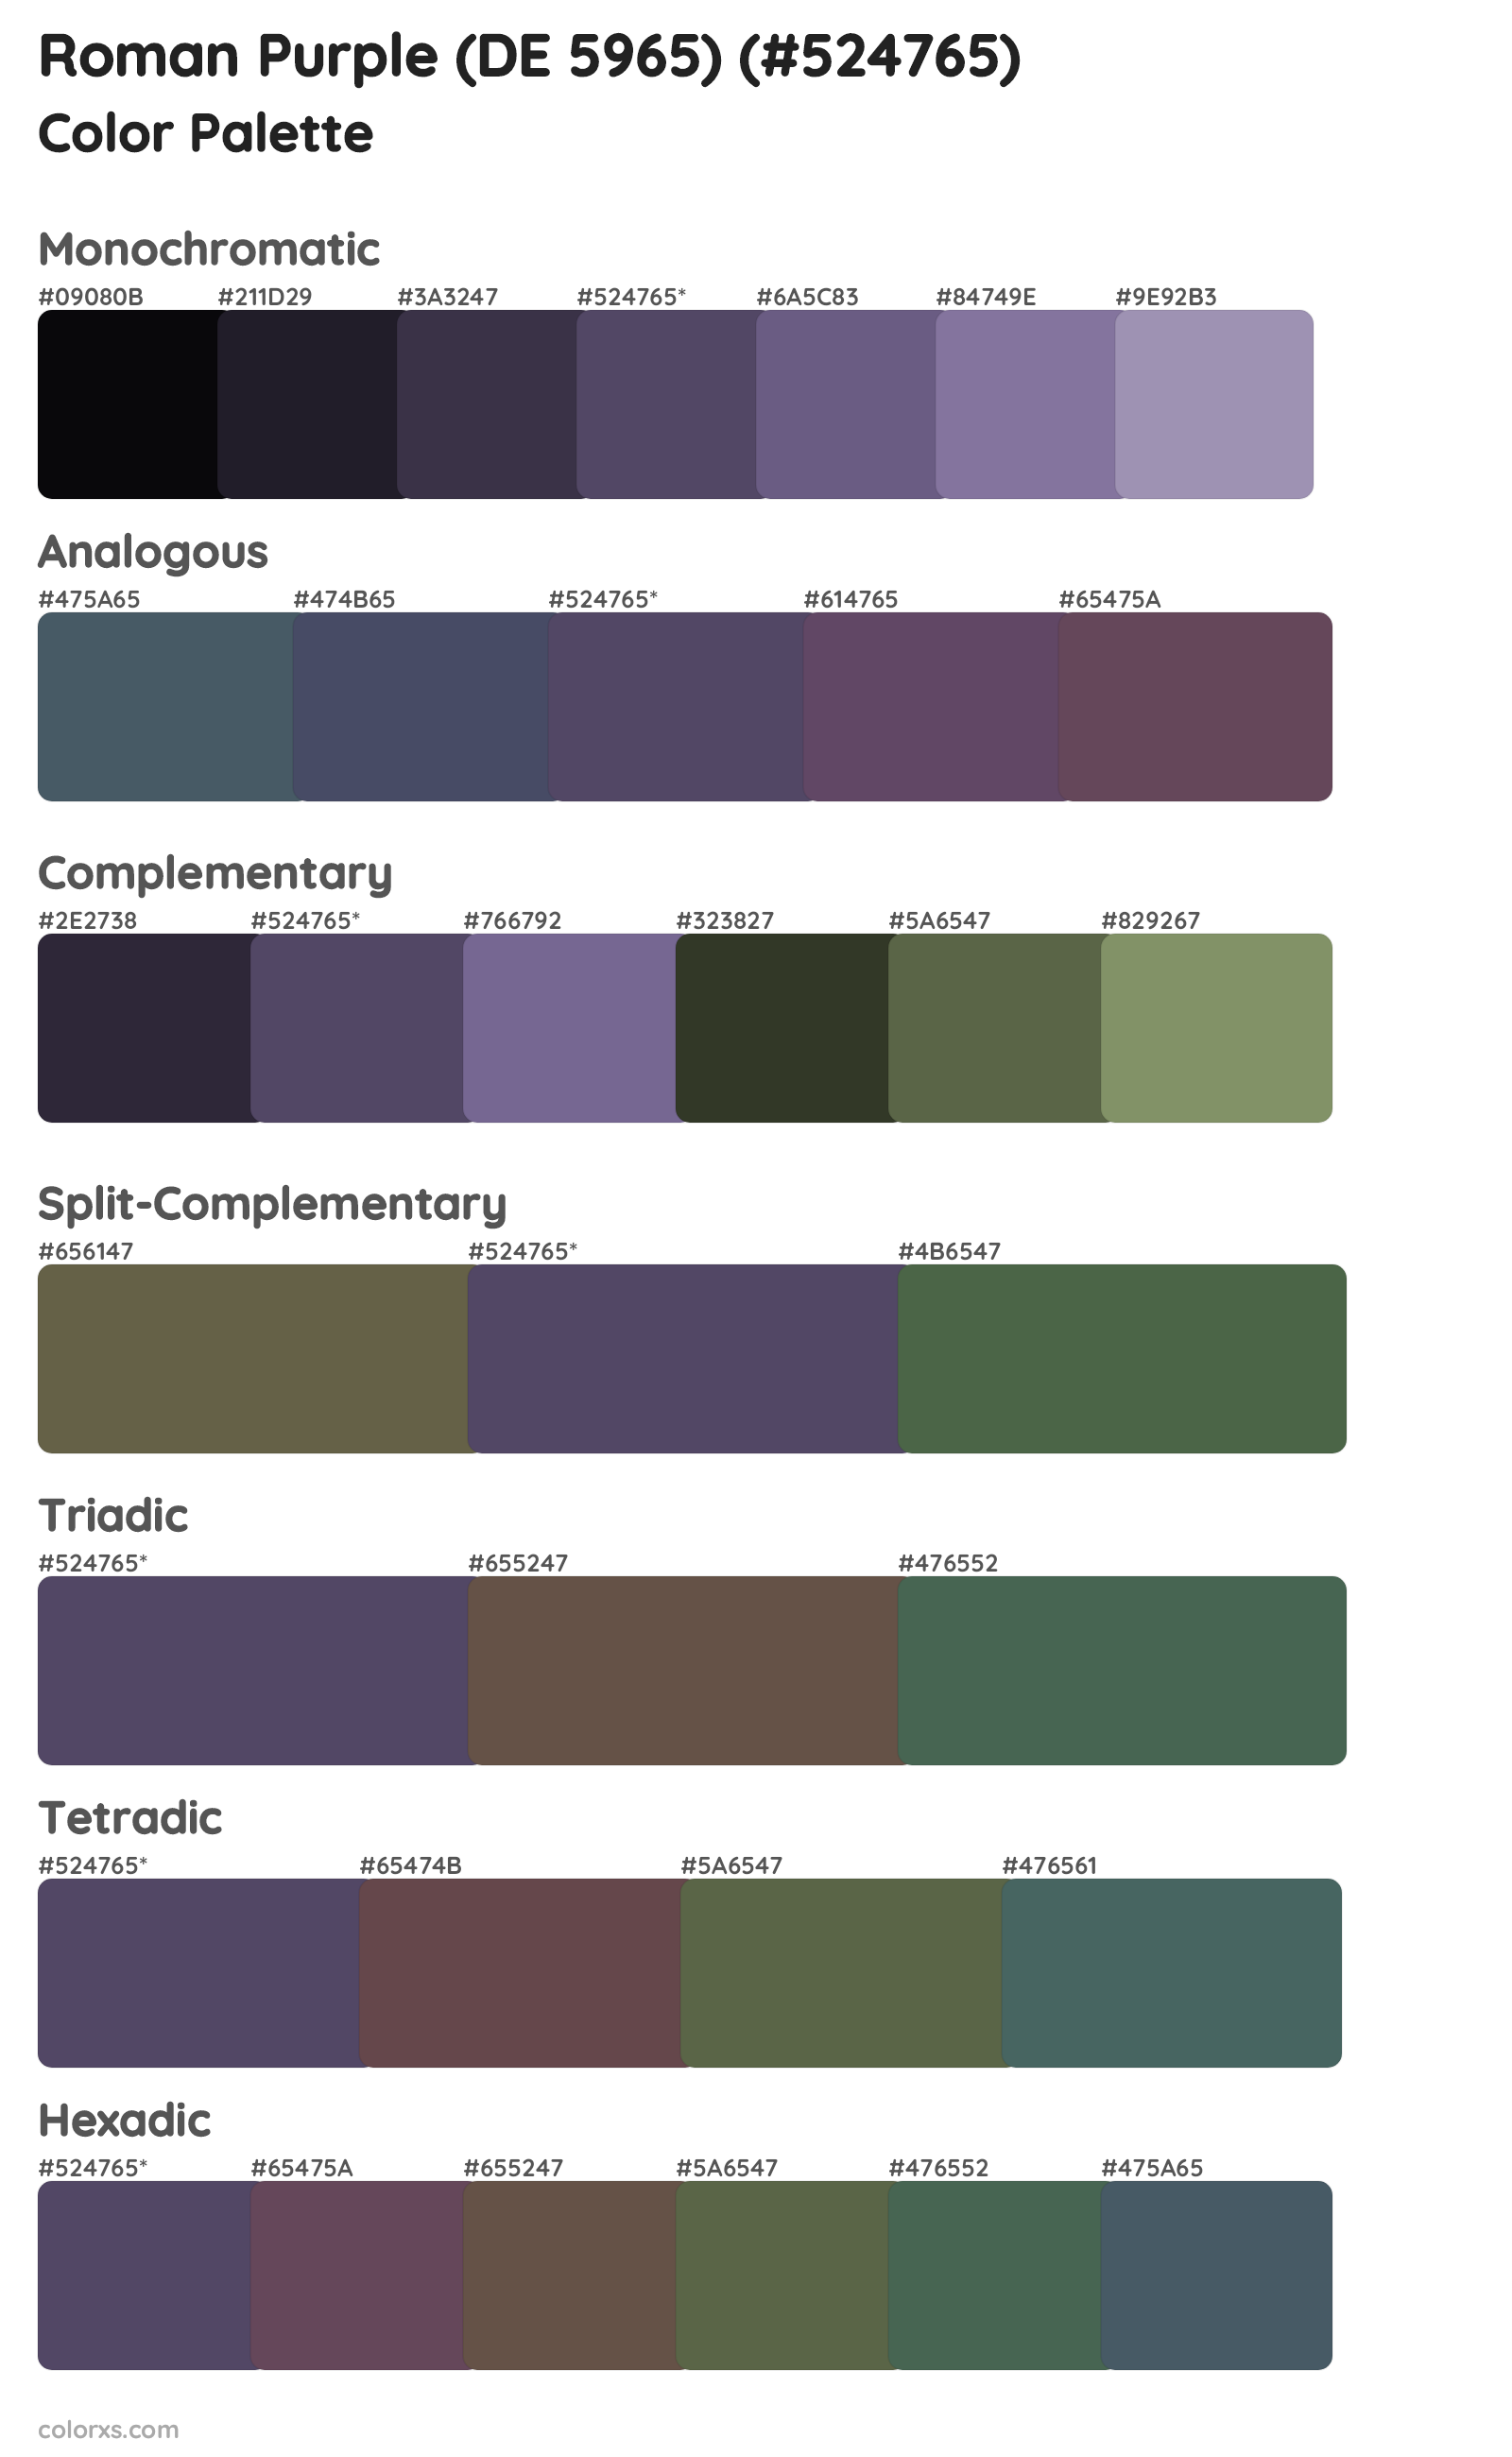 Roman Purple (DE 5965) Color Scheme Palettes